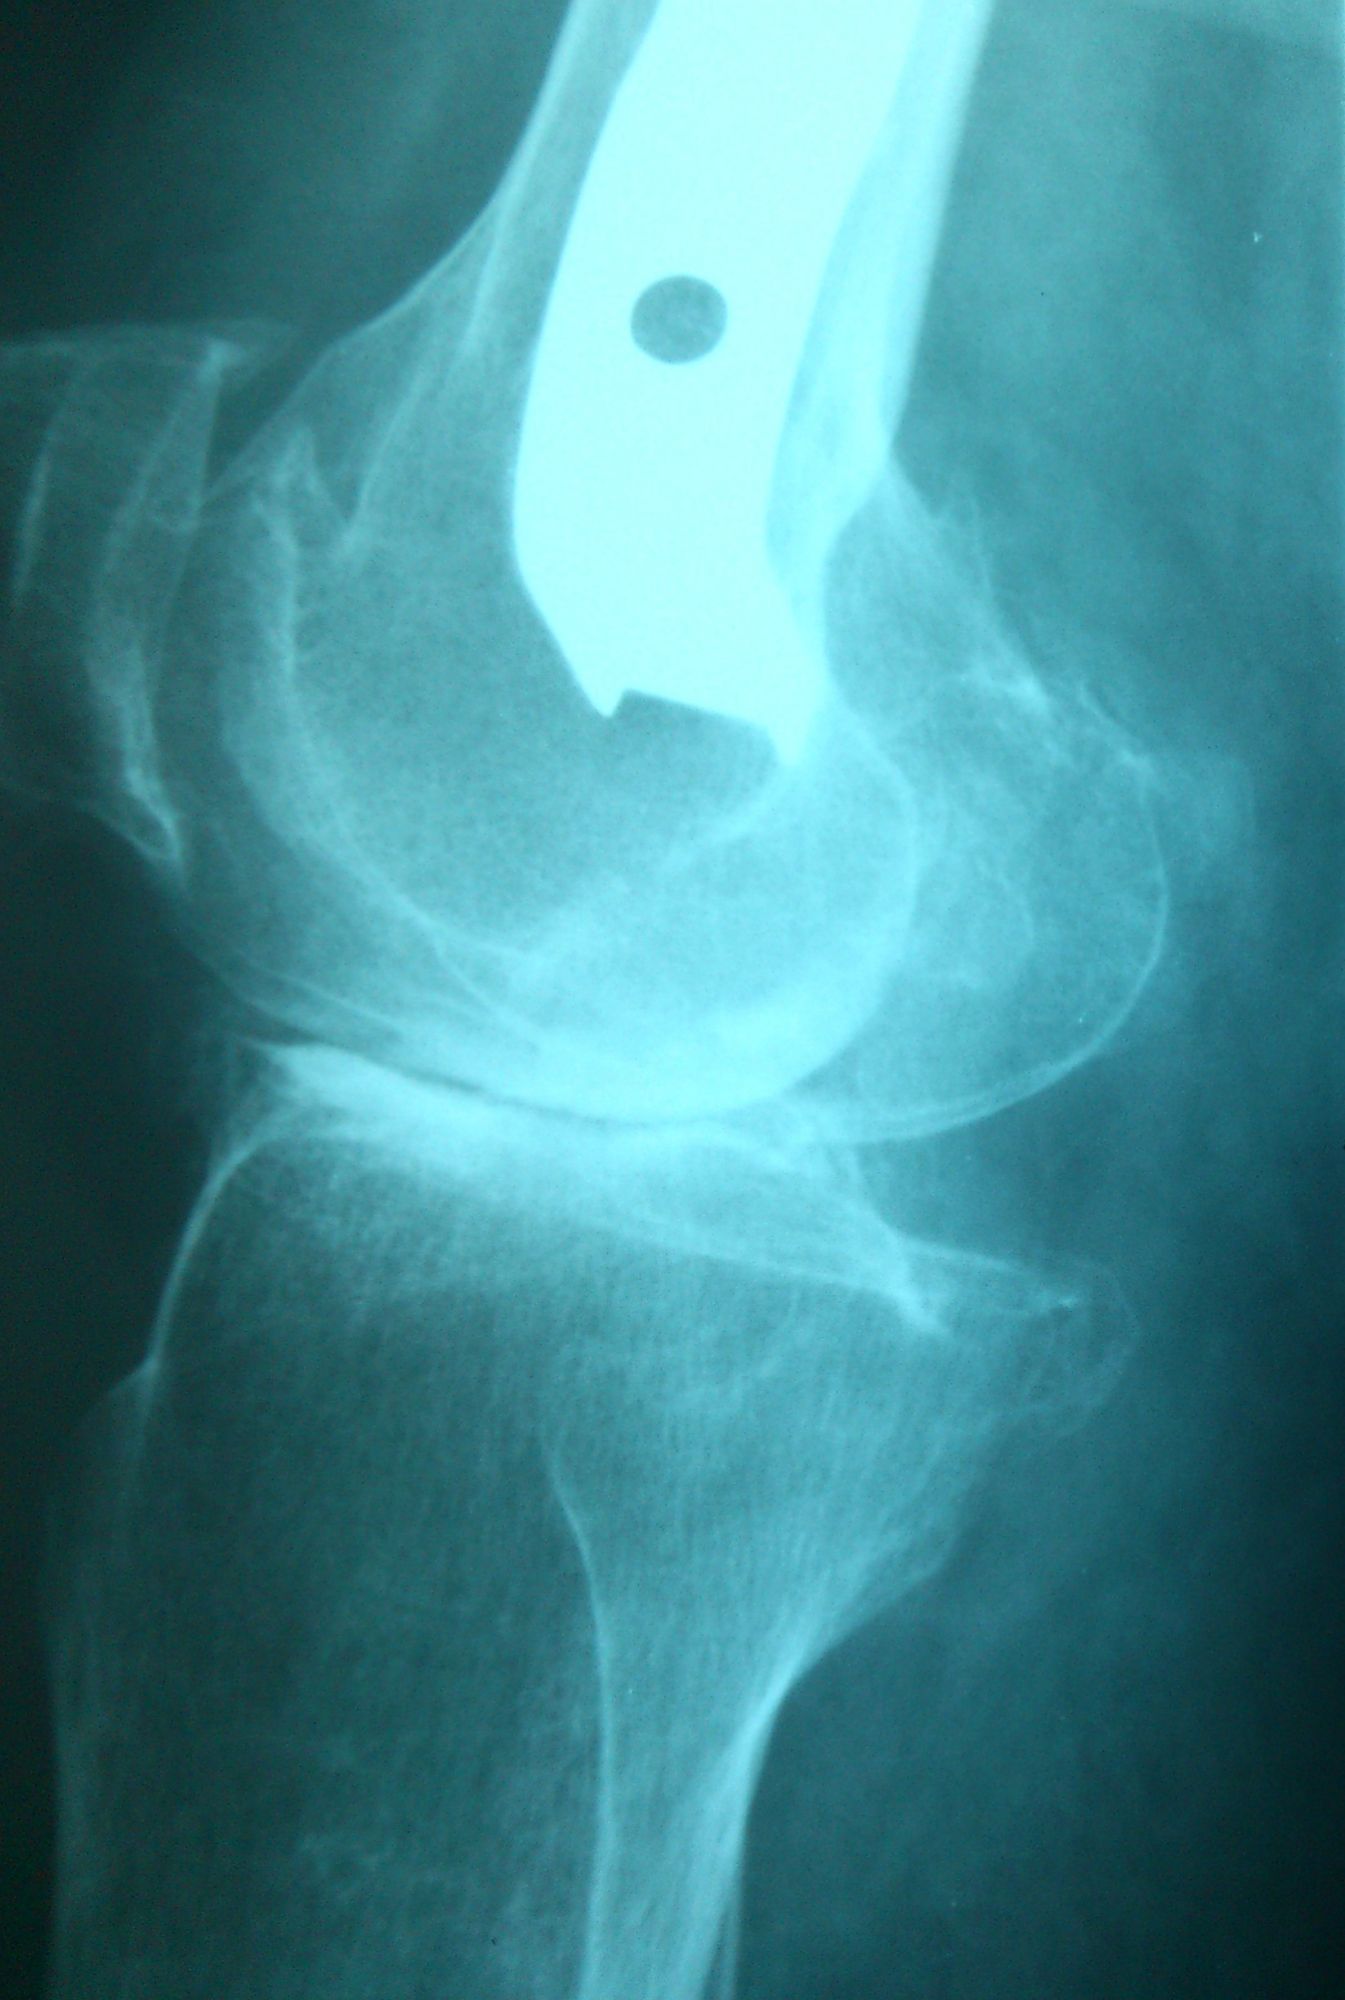 Δύσκολη ολική αρθροπλαστική σε γόνατο που έχει χειρουργηθεί για υπερκονδύλιο κάταγμα - Φωτο1 πριν